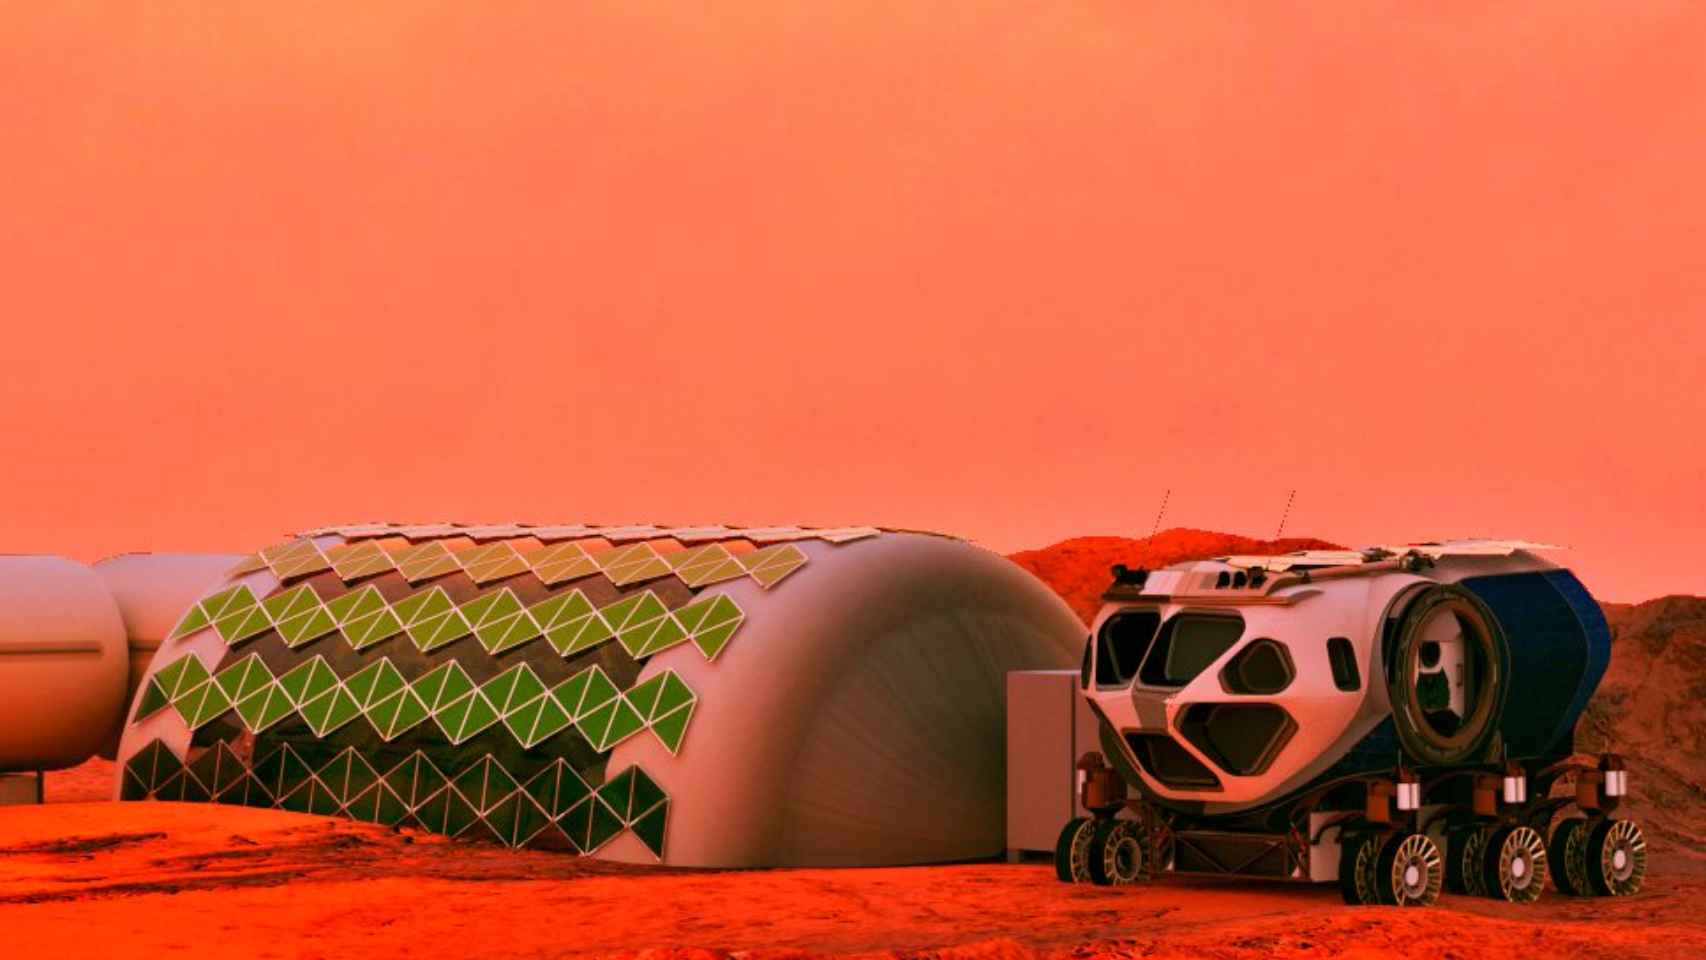 Los biopaneles podrían ser muy útiles en los asentamientos humanos de planetas como Marte